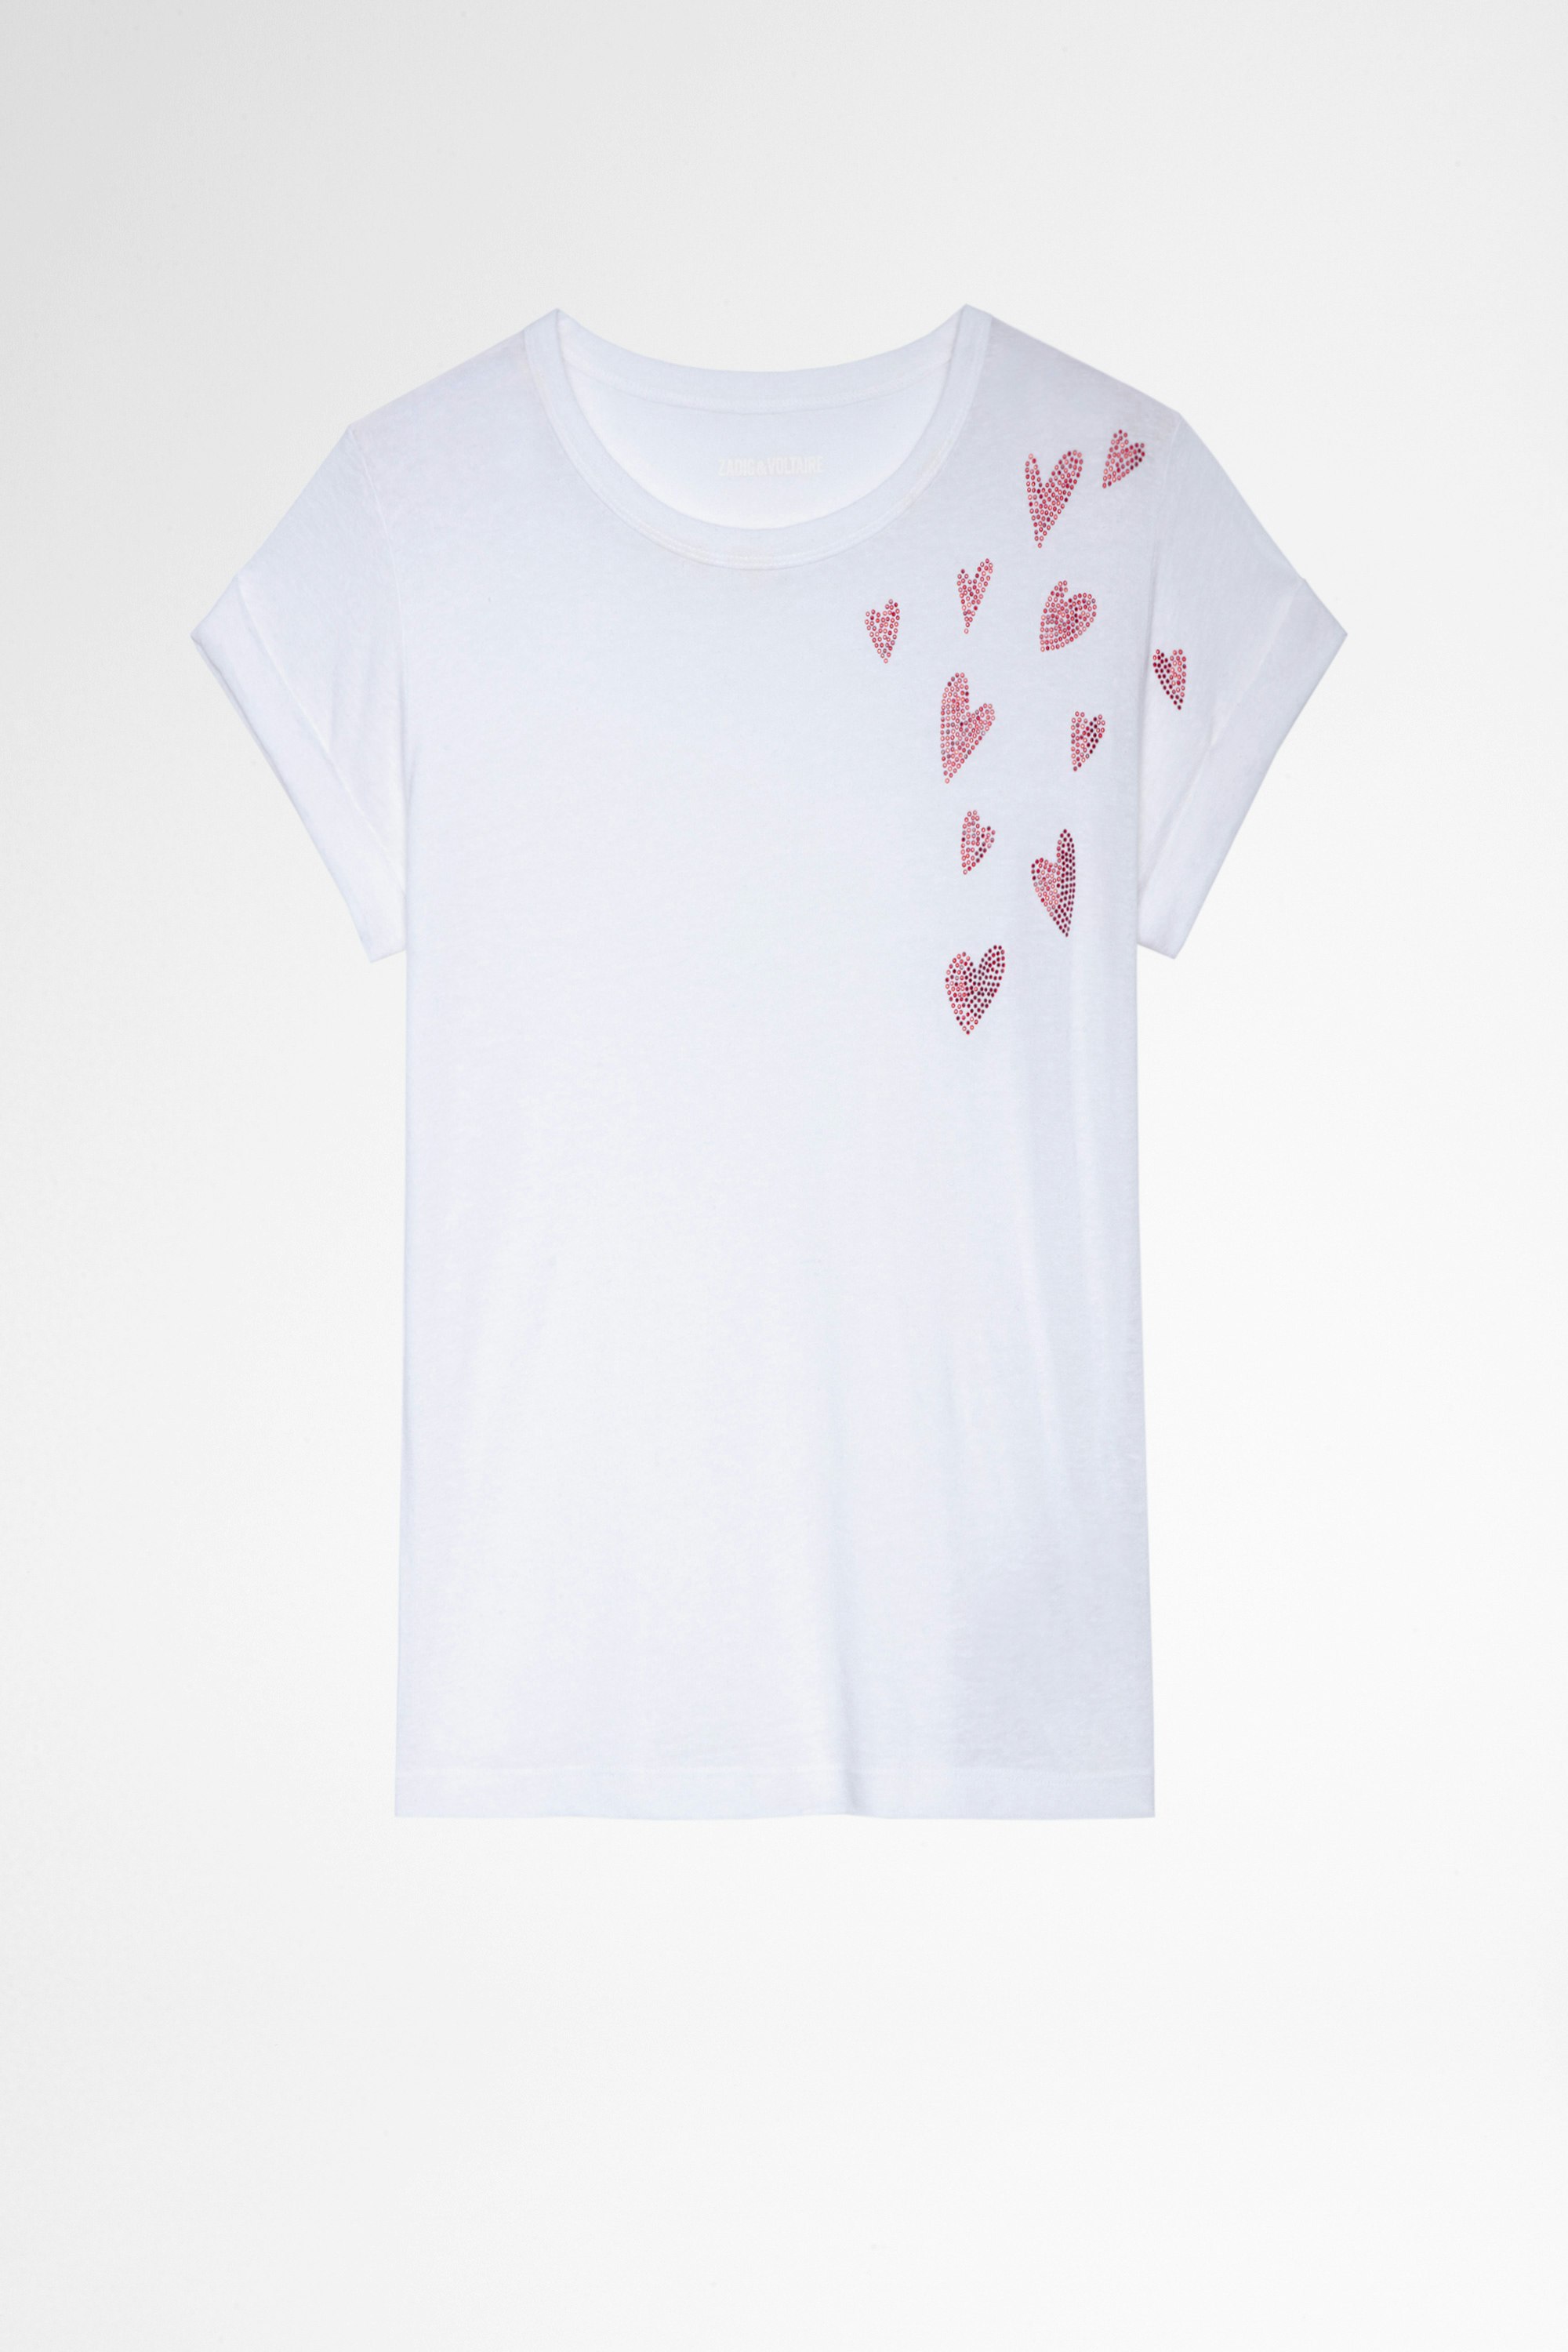 Anya Heart T-shirt Women's white t-shirt with rhinestone hearts